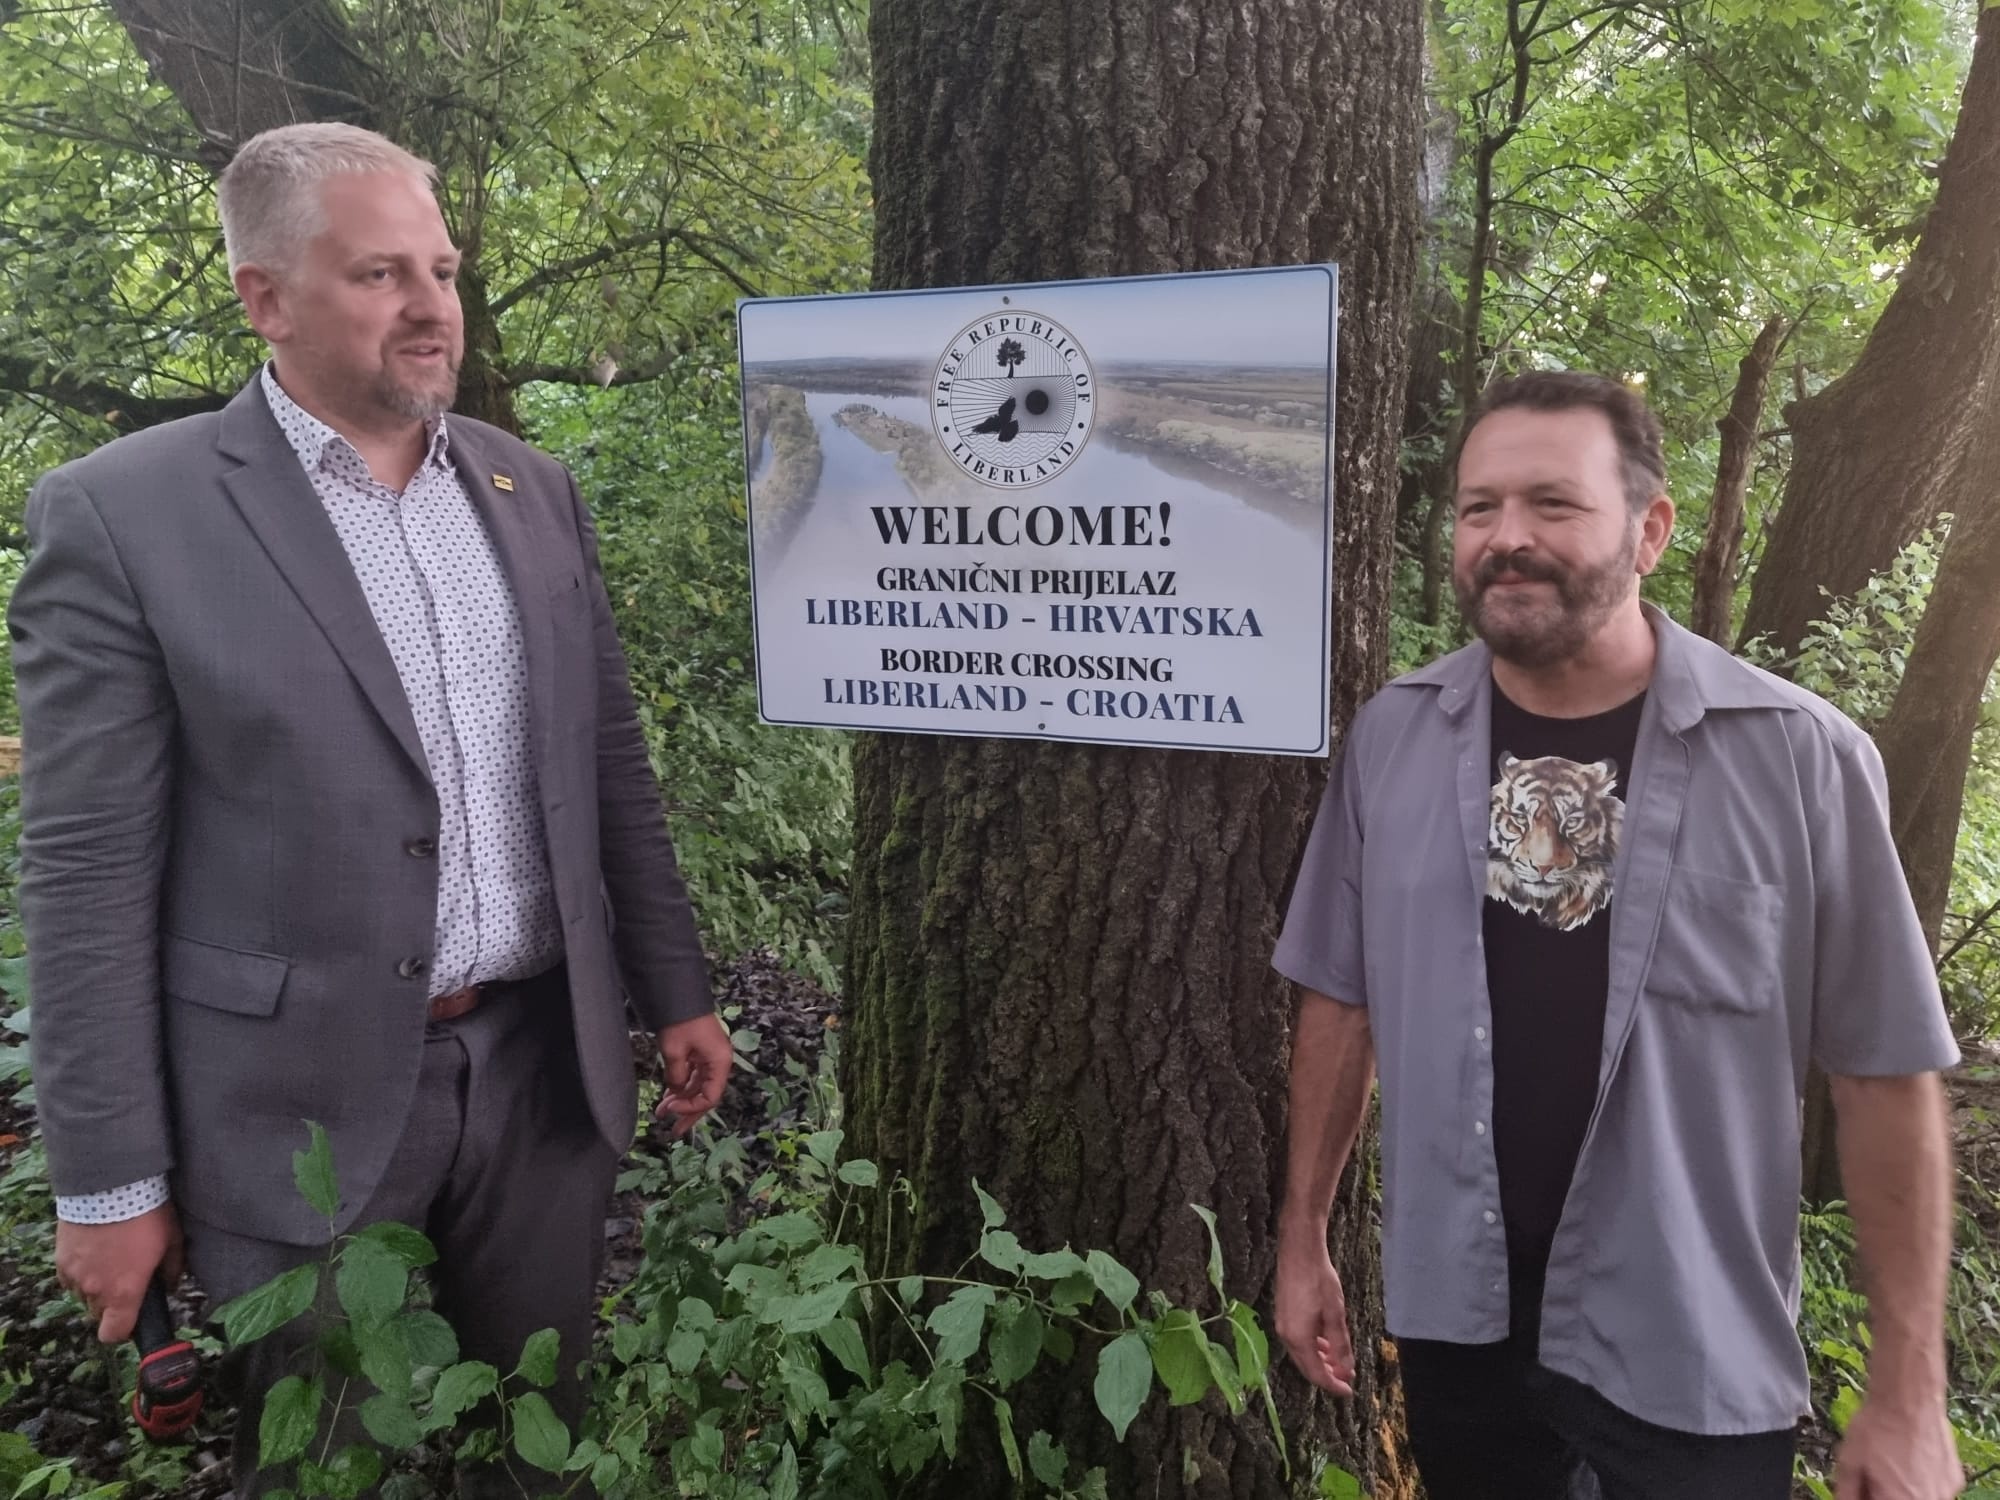 Kroatian ja Liberlandin rajan avautumisen kunniaksi rantaan pystytettiin tervetulokyltti. Presidentti Vit Jedlicka kuvassa vasemmalla. Kuva: Elias Ahonen